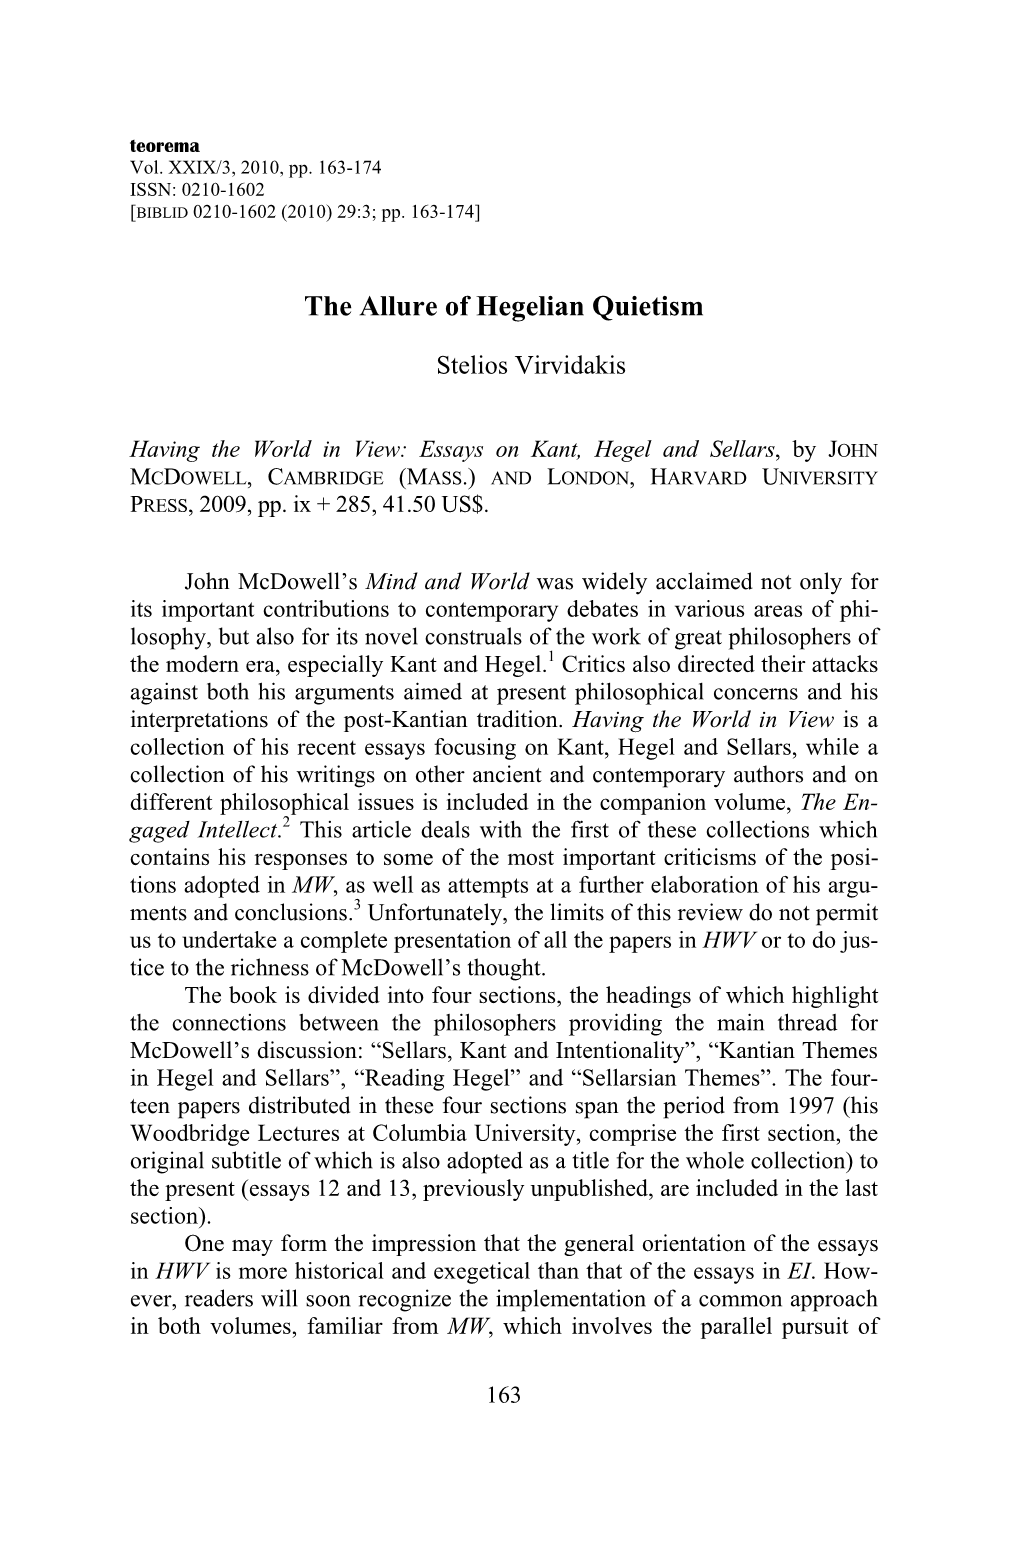 The Allure of Hegelian Quietism